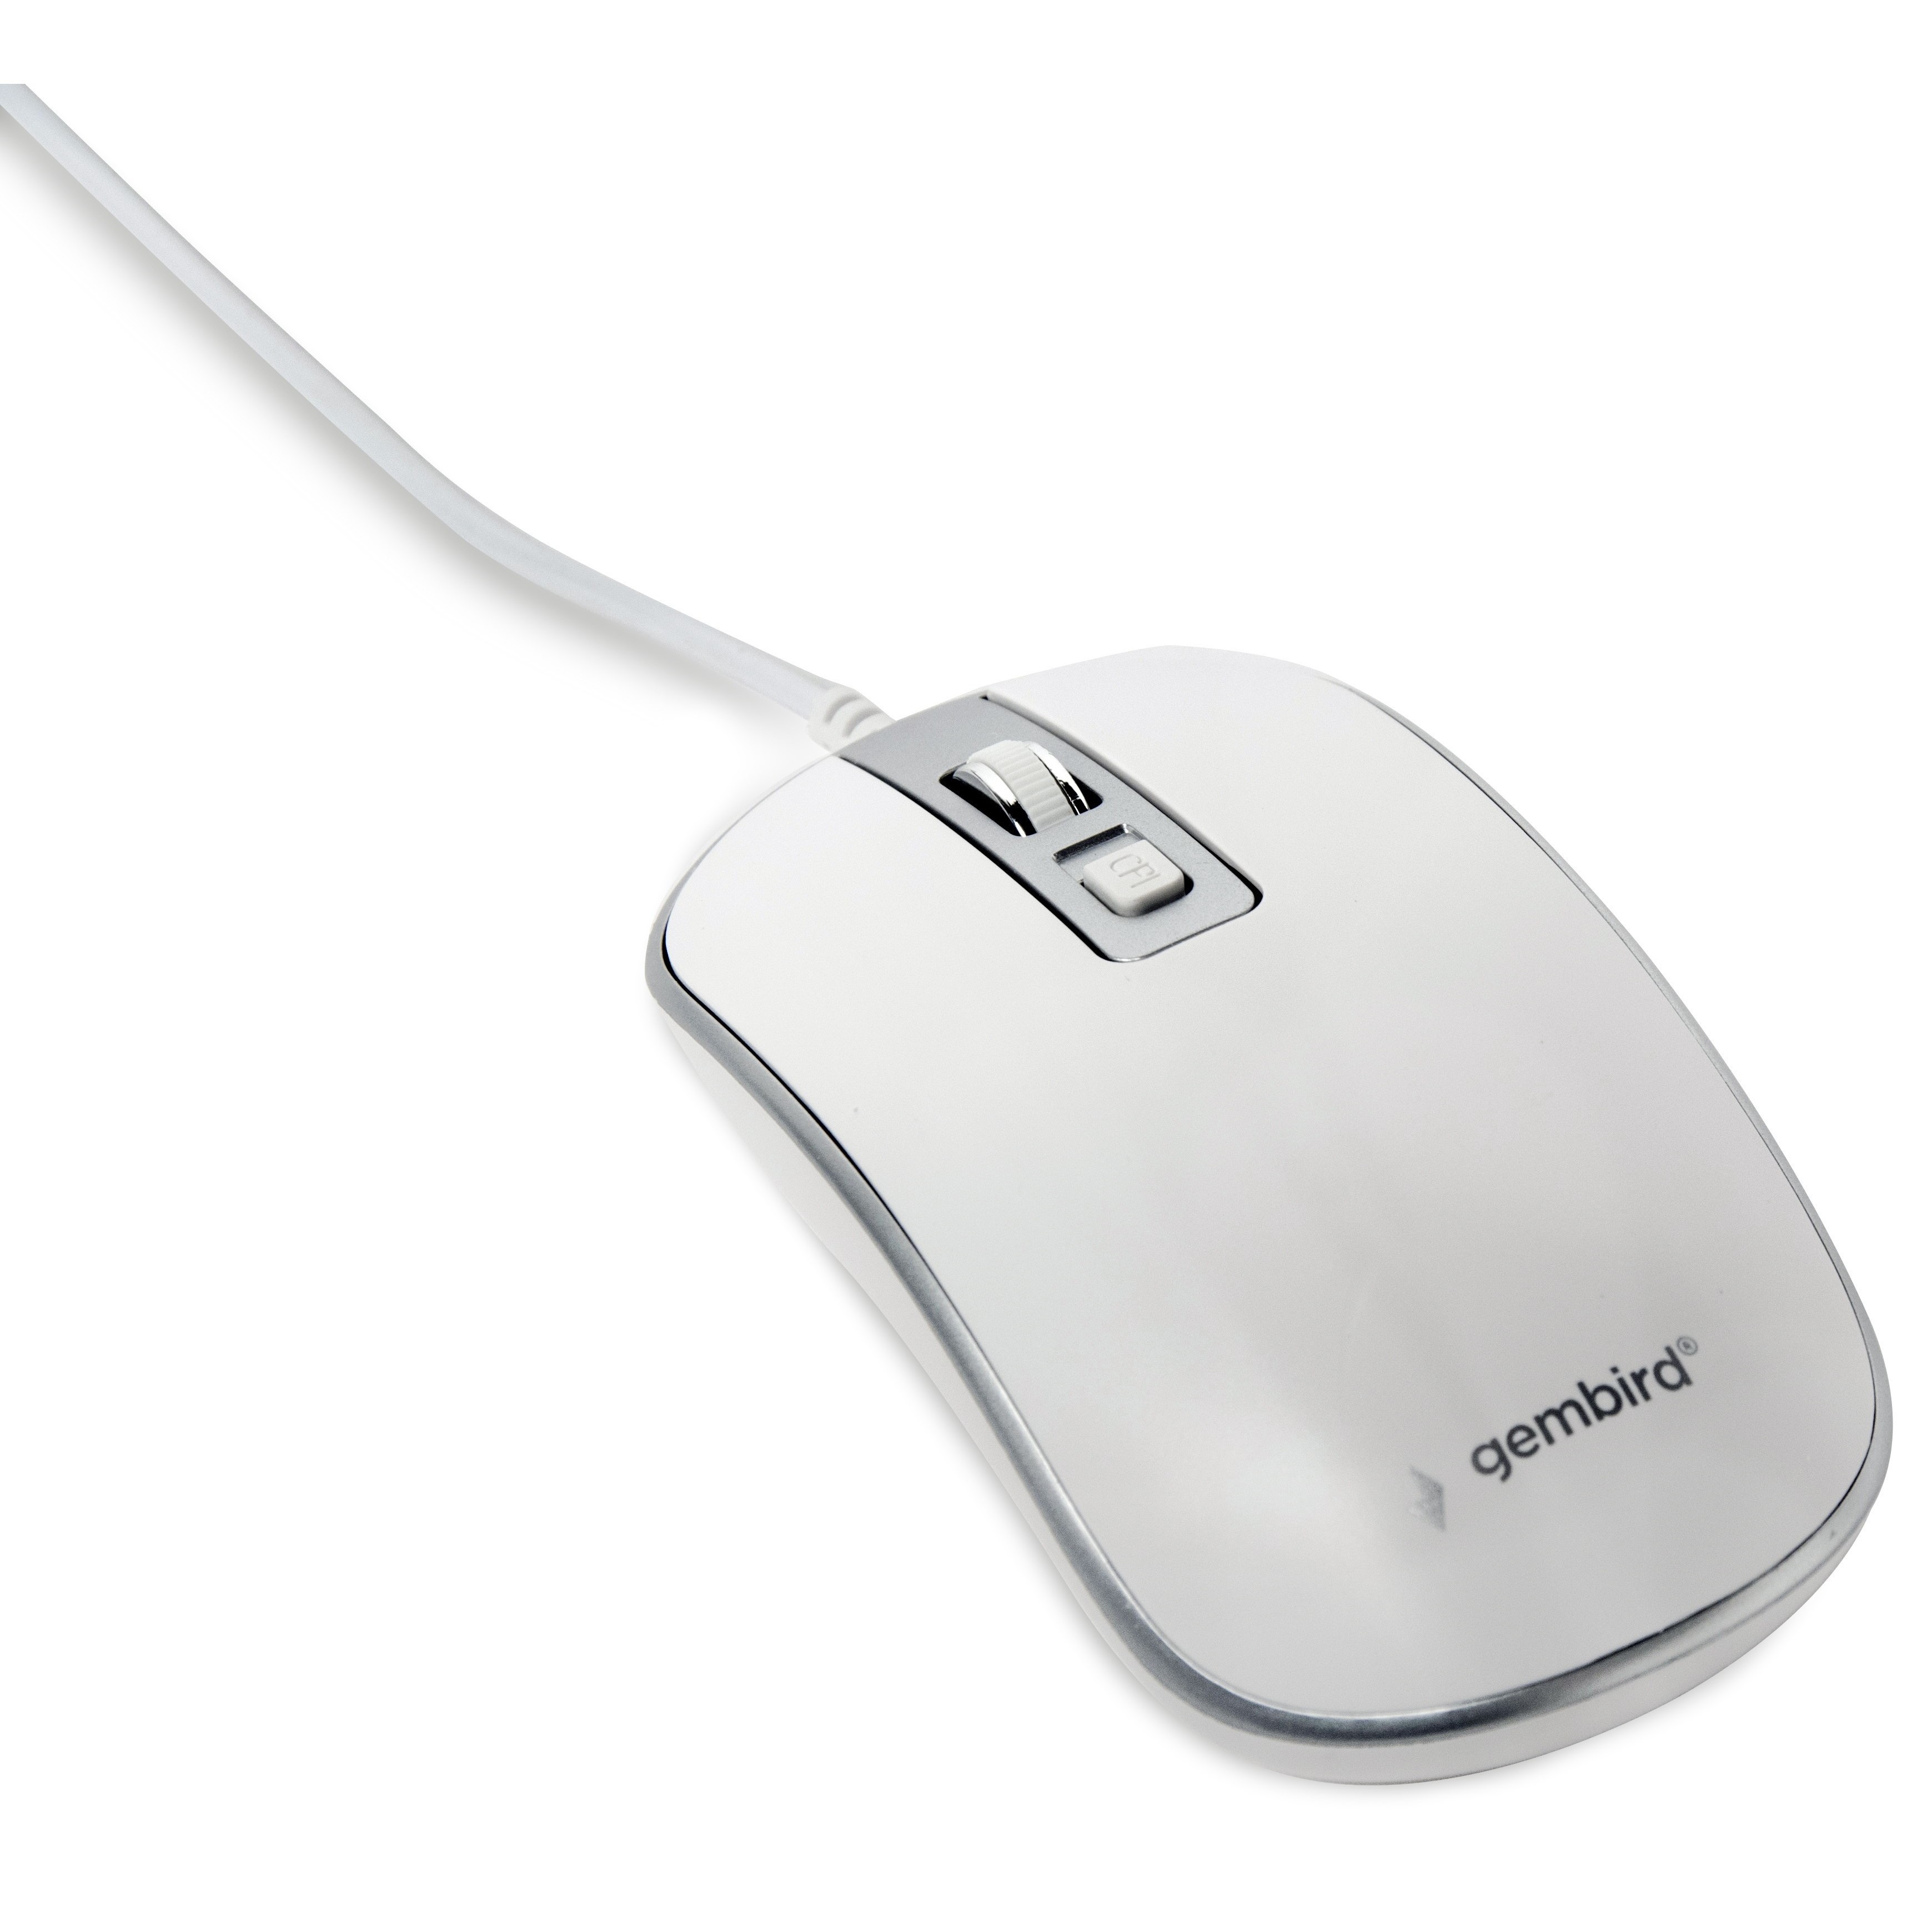 Ws 06. Gembird mus-4b-01 Soft. Gembird Optical Mouse. Gembird mus-4b-01 dpi. Мышь проводная 4-х кнопочная оптическая mus-4b-01.